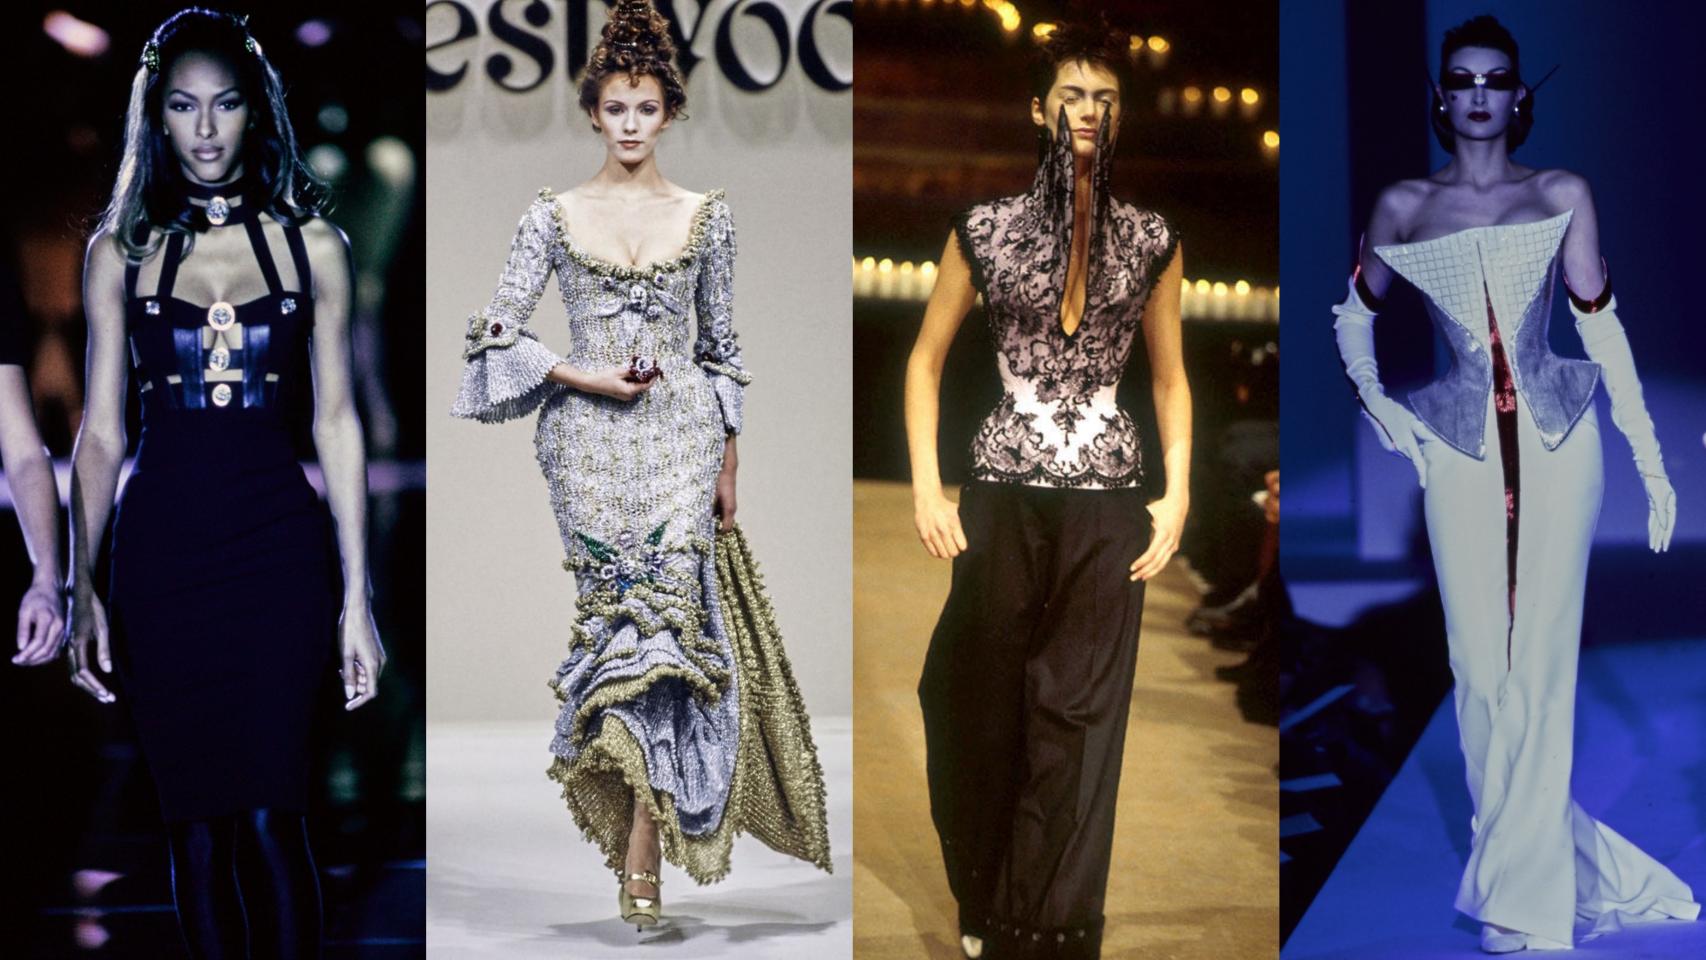 Algunas de las propuestas presentadas por Versace, Westwood, McQueen y Mugler durante los años 90. | Foto: GTRES y Getty Images.